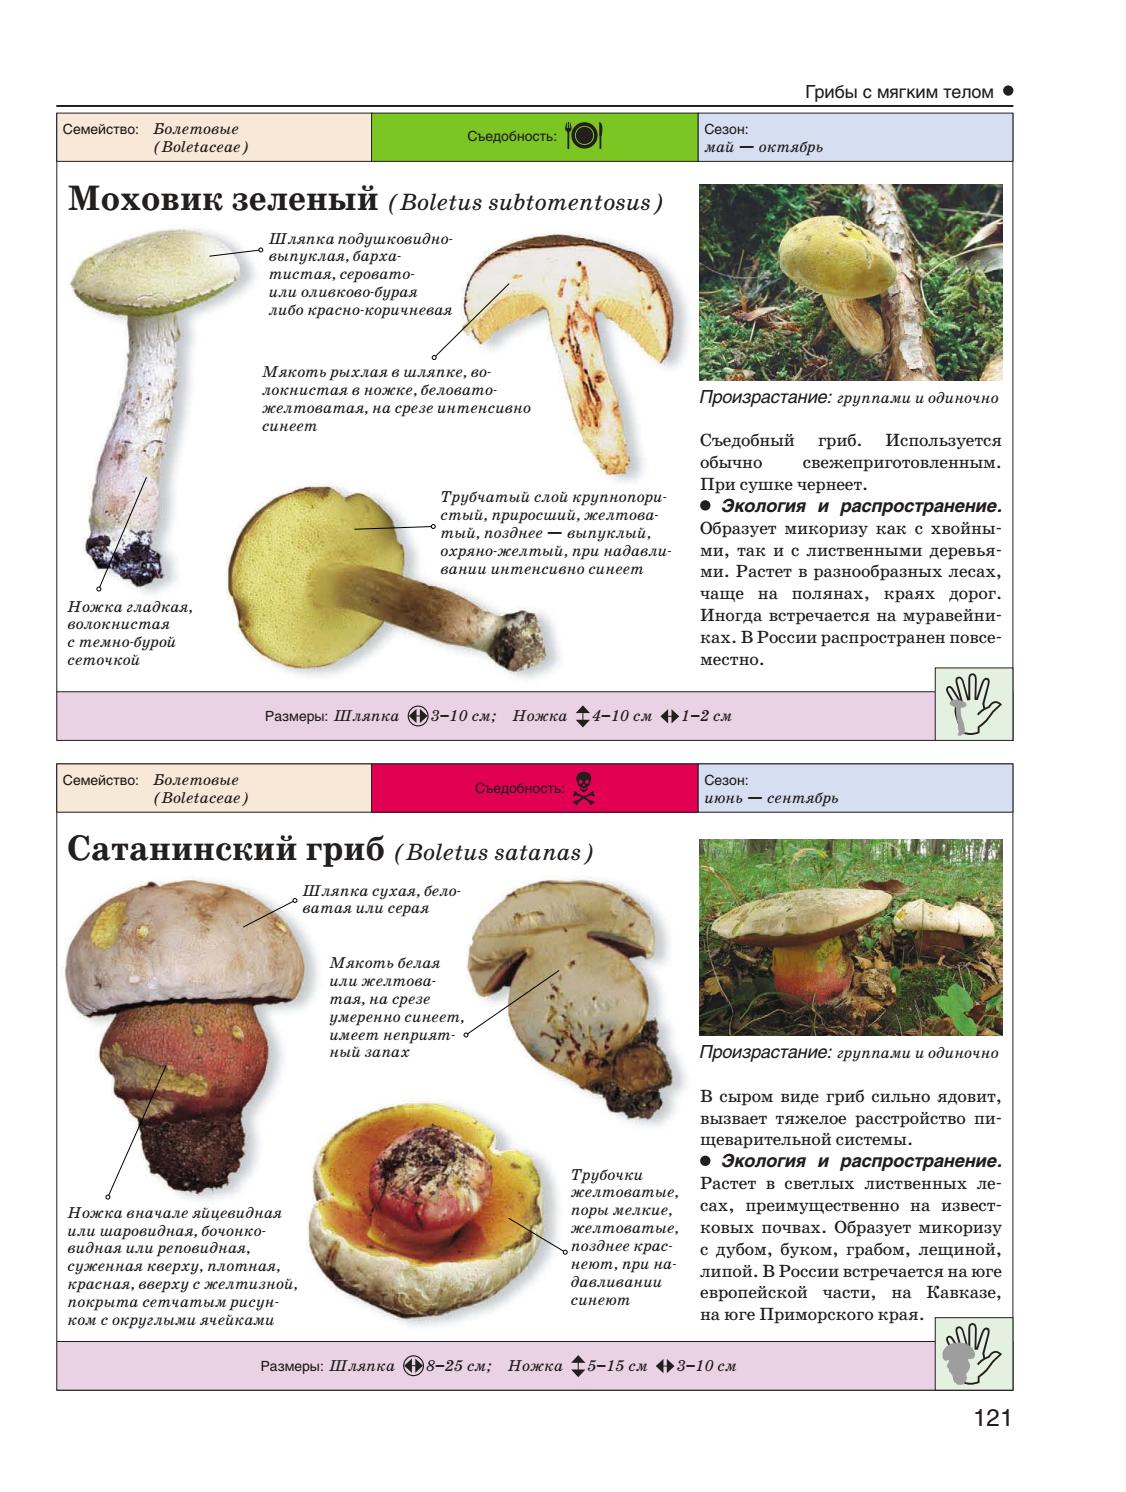 Грибы подмосковья - [съедобные и ядовитые грибы], фото с названиями и описанием, где растут